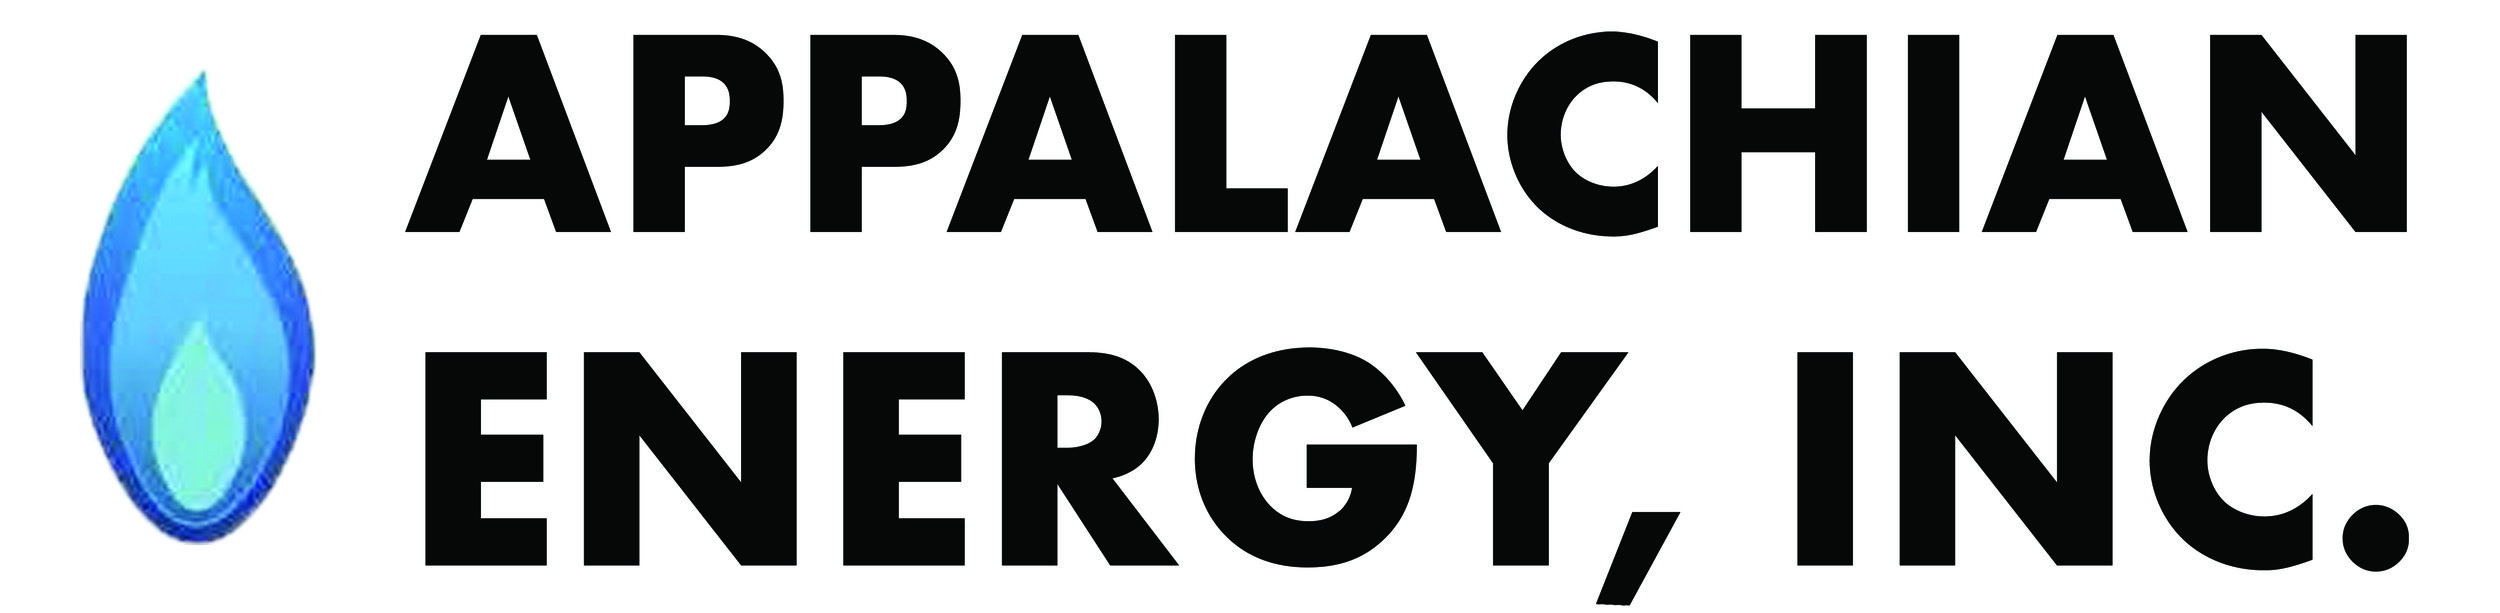 Appalachian Energy Inc.